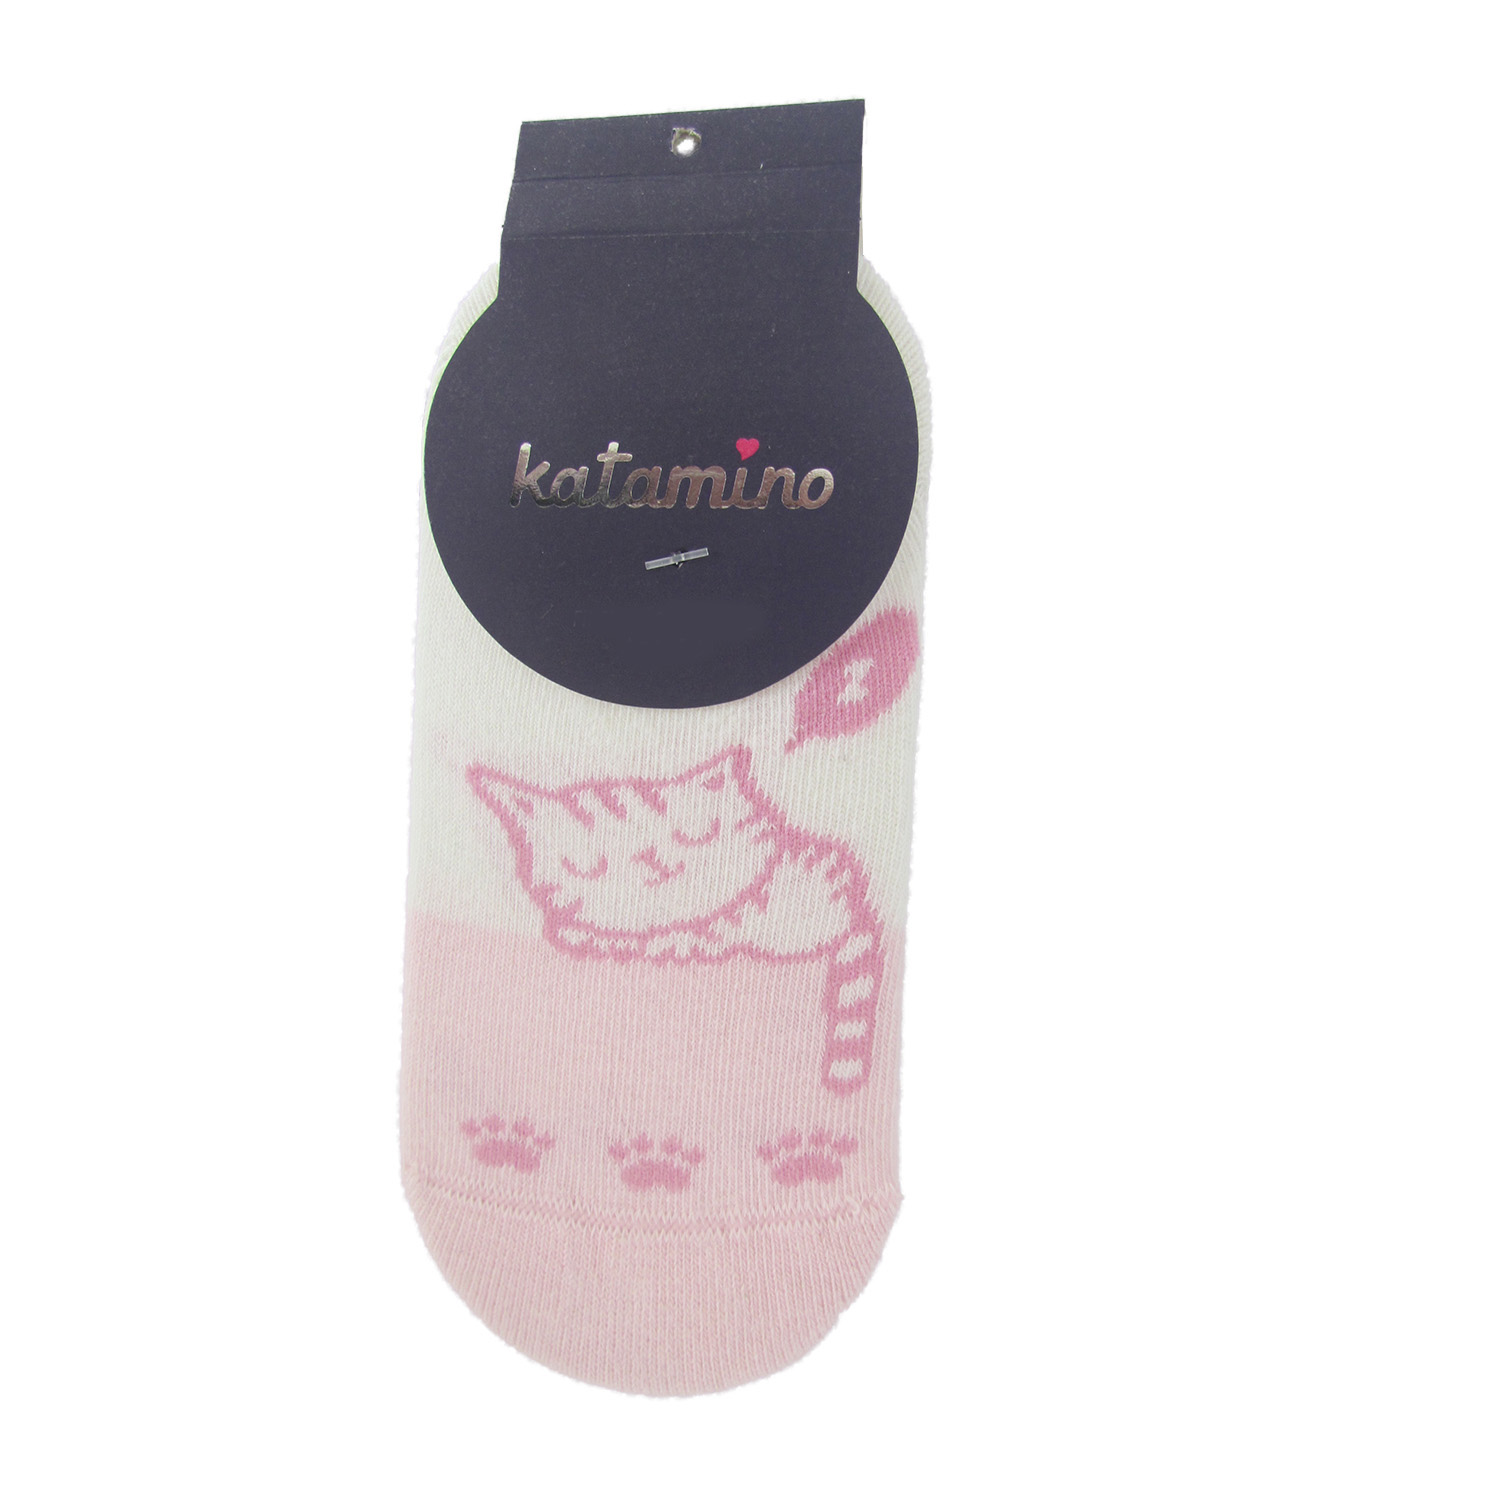 جوراب دخترانه کاتامینا مدل K90019